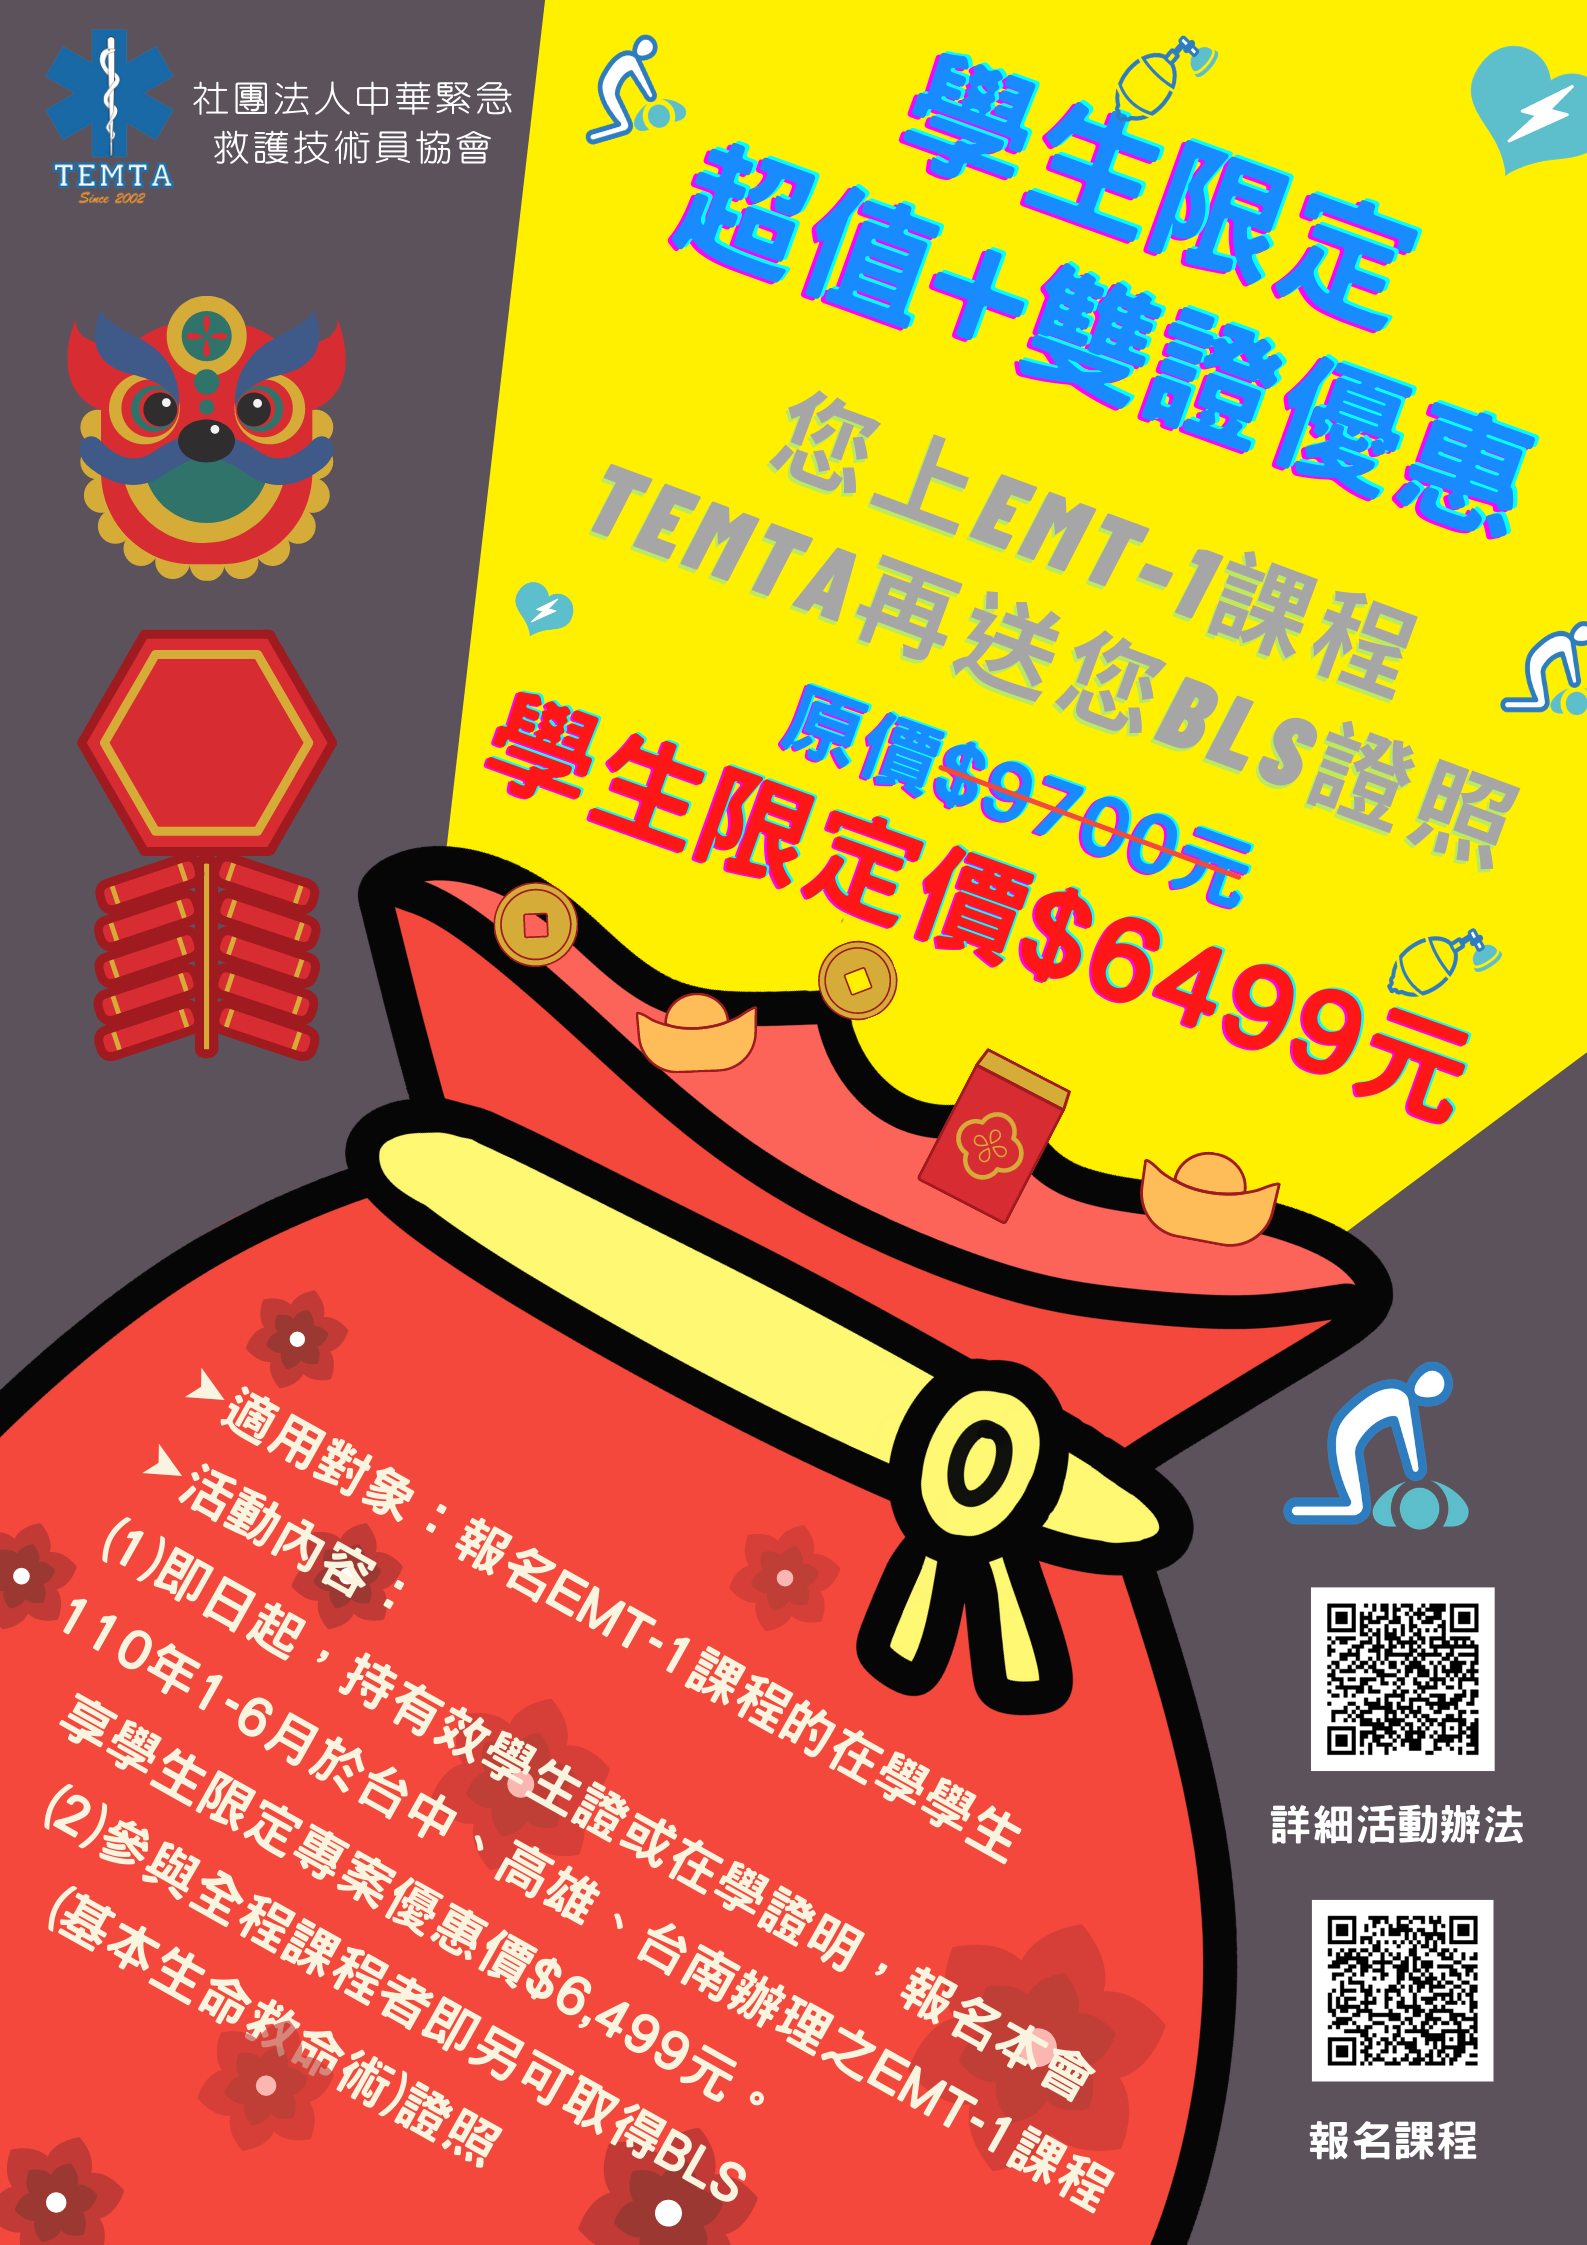 Temta 21年1月至6月emt 1系列課程優惠說明 社團法人中華緊急救護技術員協會